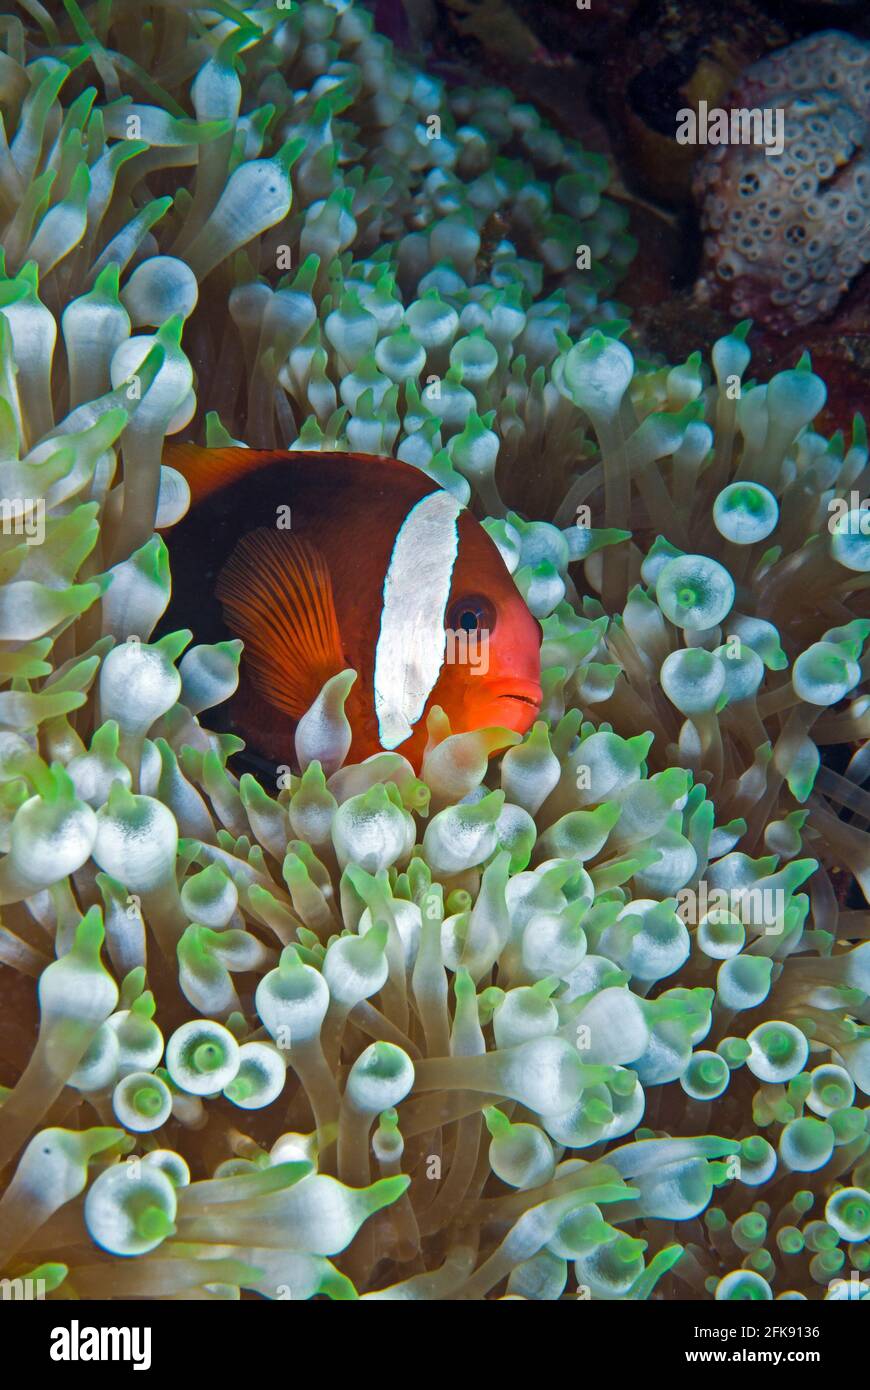 Anemonefish femminile di pomodoro (Amphiprion frenatus) su anemone a bolla, Palau, Micronesia Foto Stock